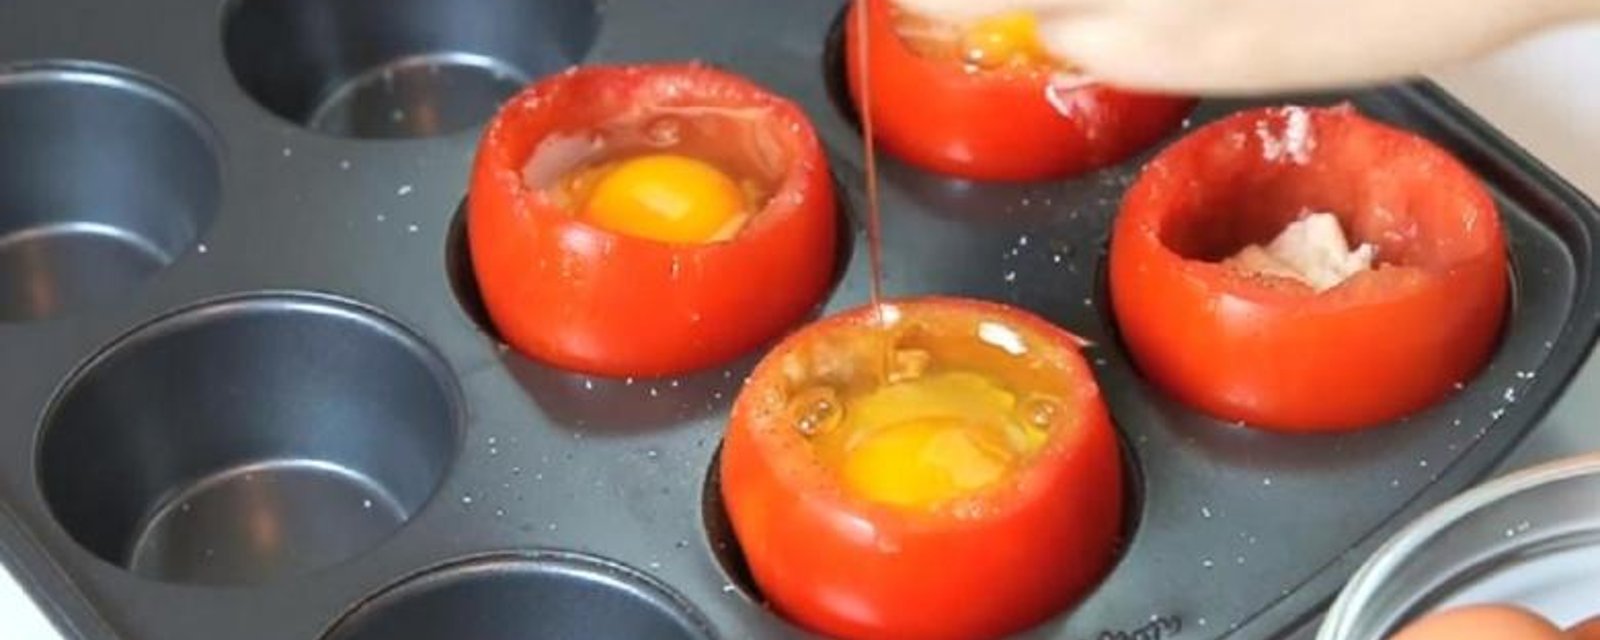 Elle casse des oeufs dans des tomates et ajoute quelques ingrédients! Sa recette est délicieuse! 